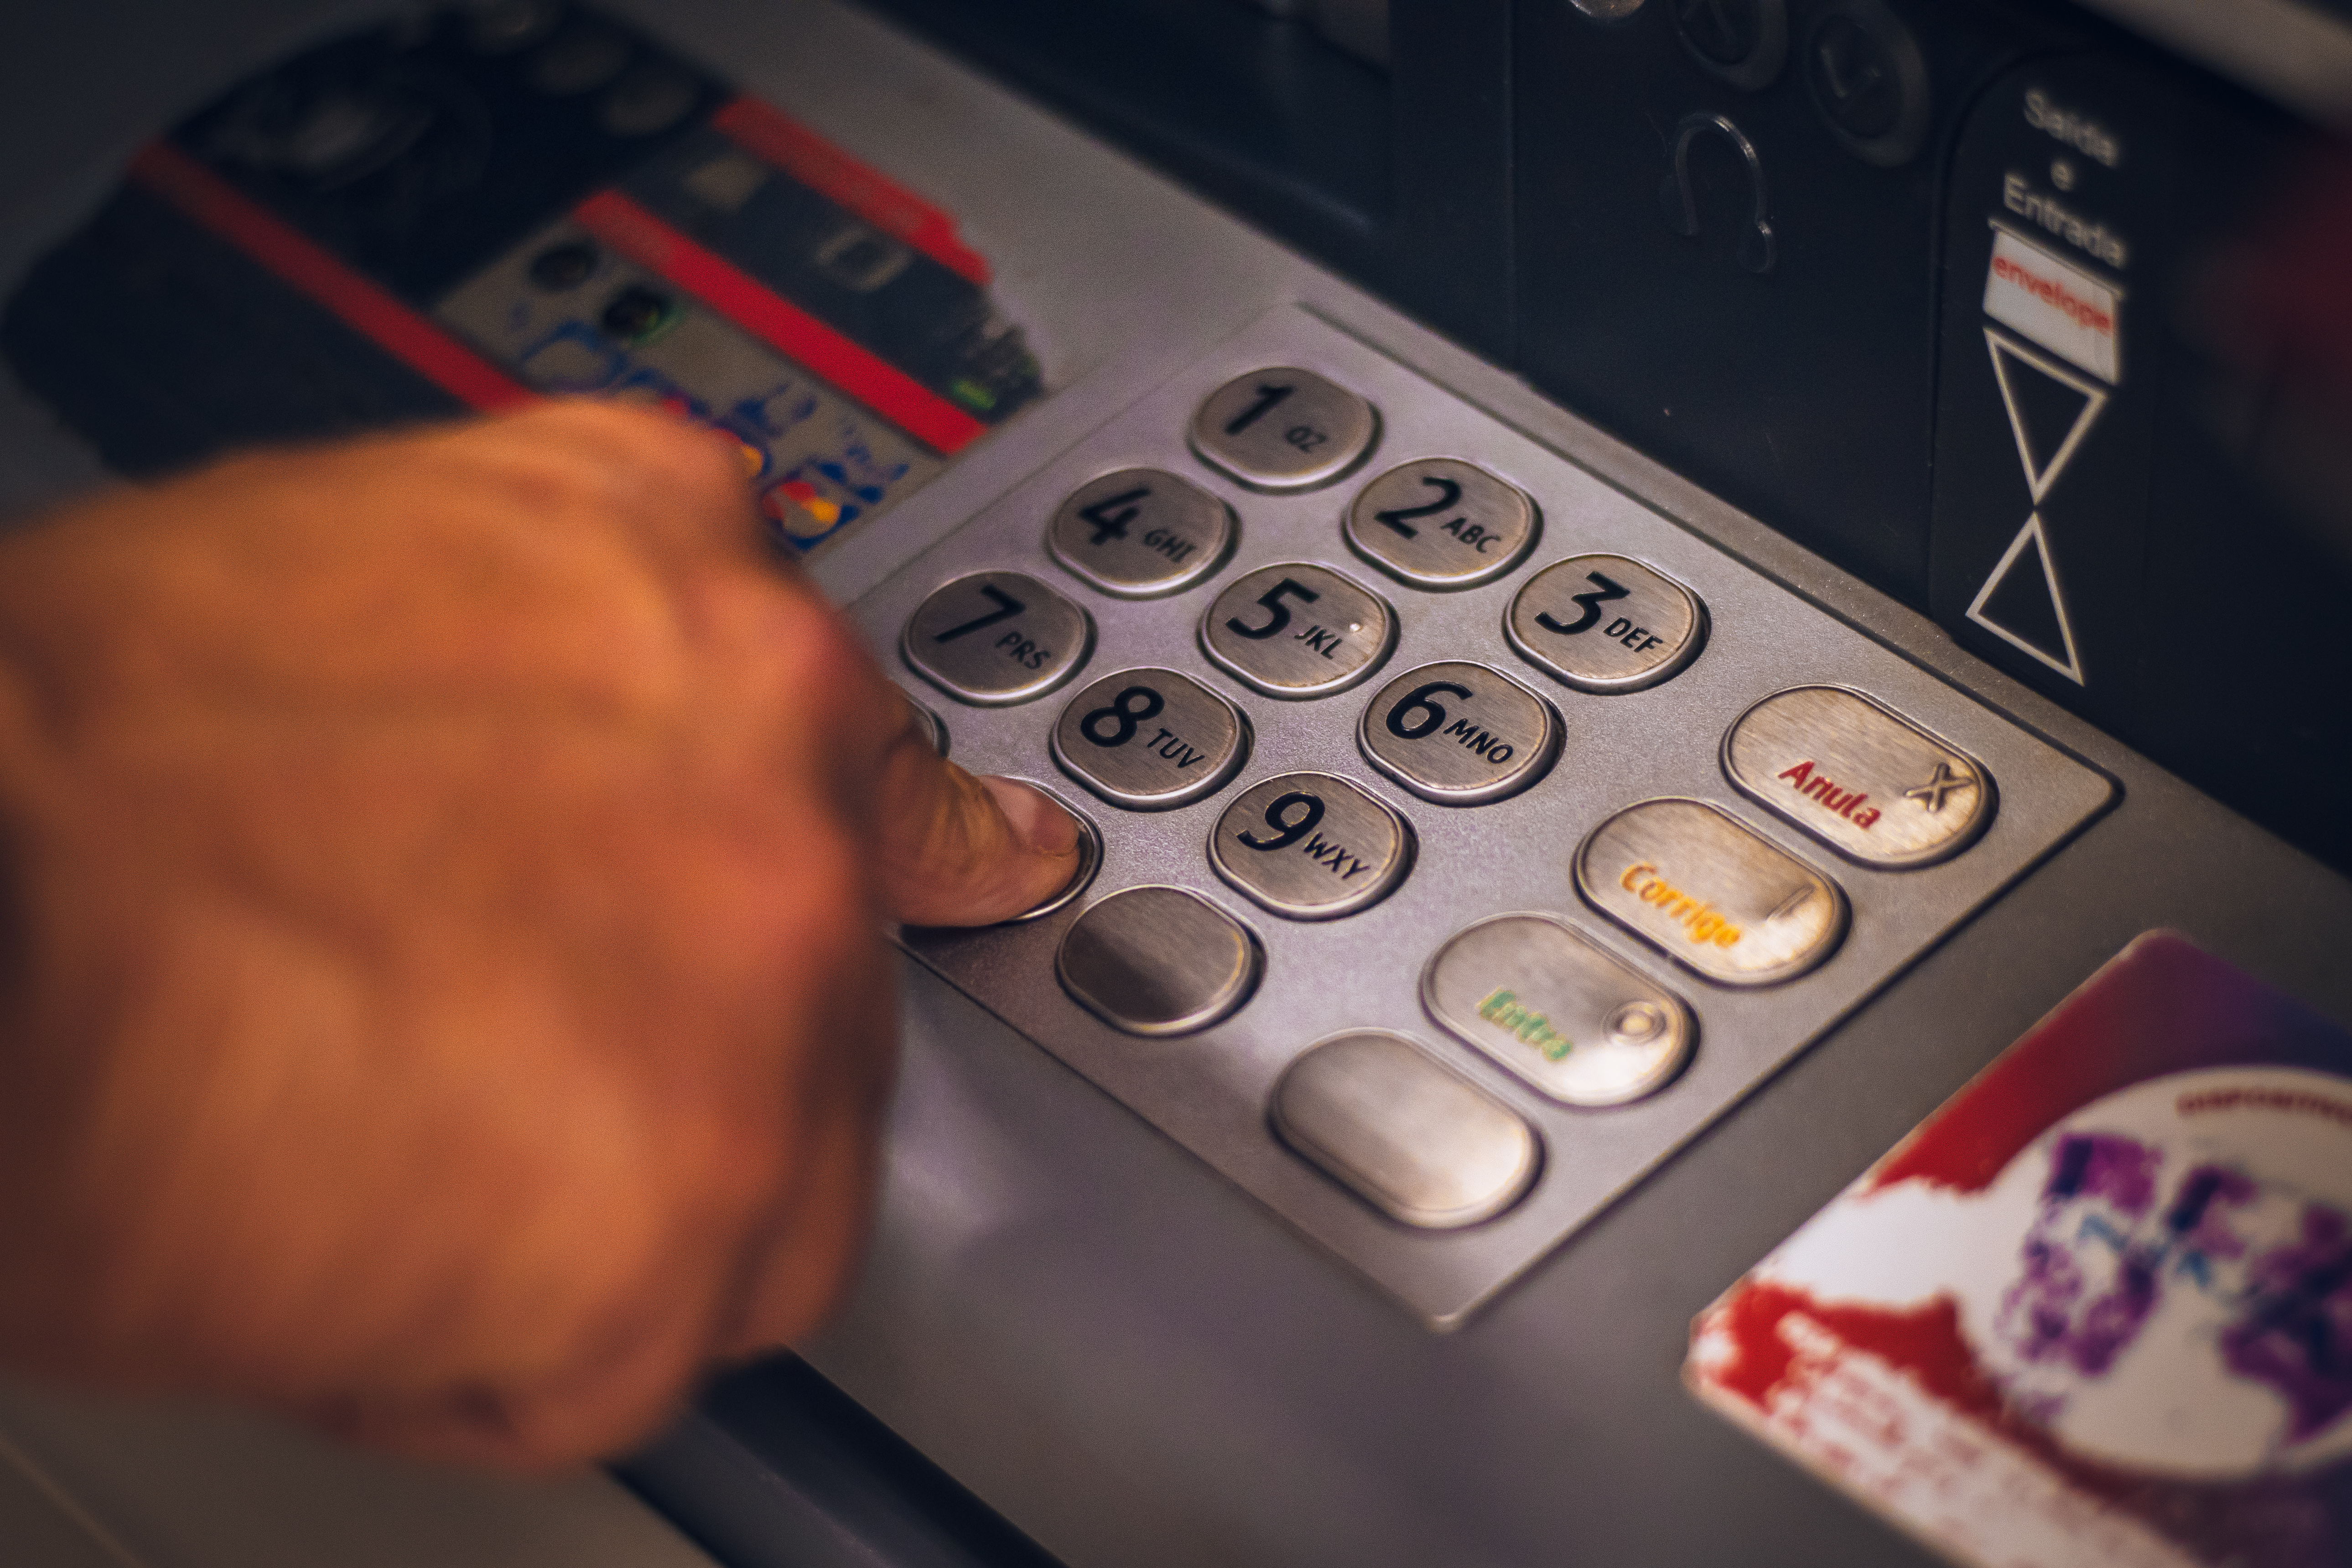 Cek nomor rekening Mandiri yang lupa bisa lewat mesin ATM.